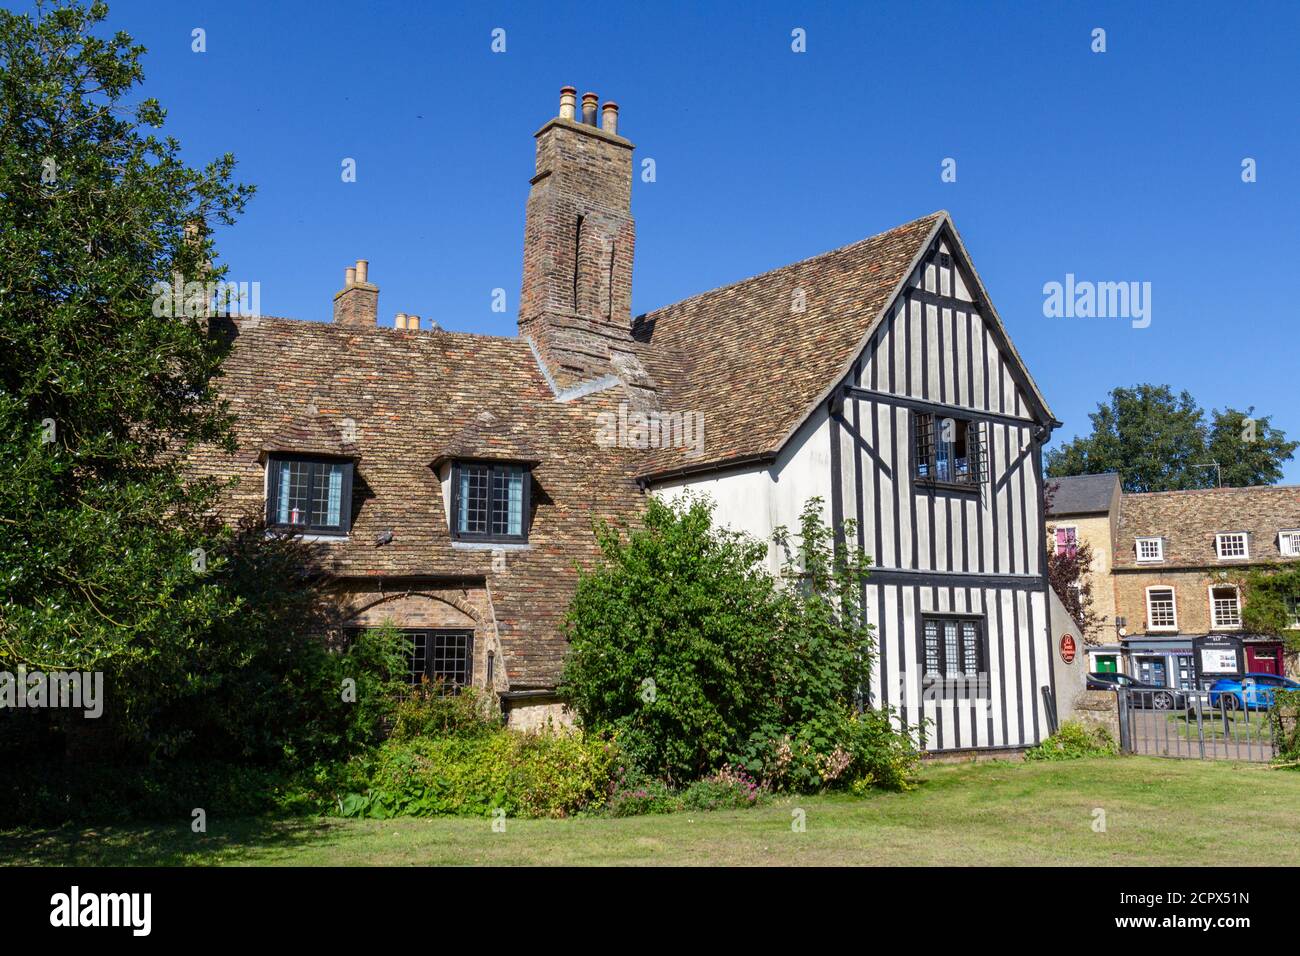 Oliver Cromwell's House on St Marys Street, Ely, Cambridgeshire, UK. Stock Photo